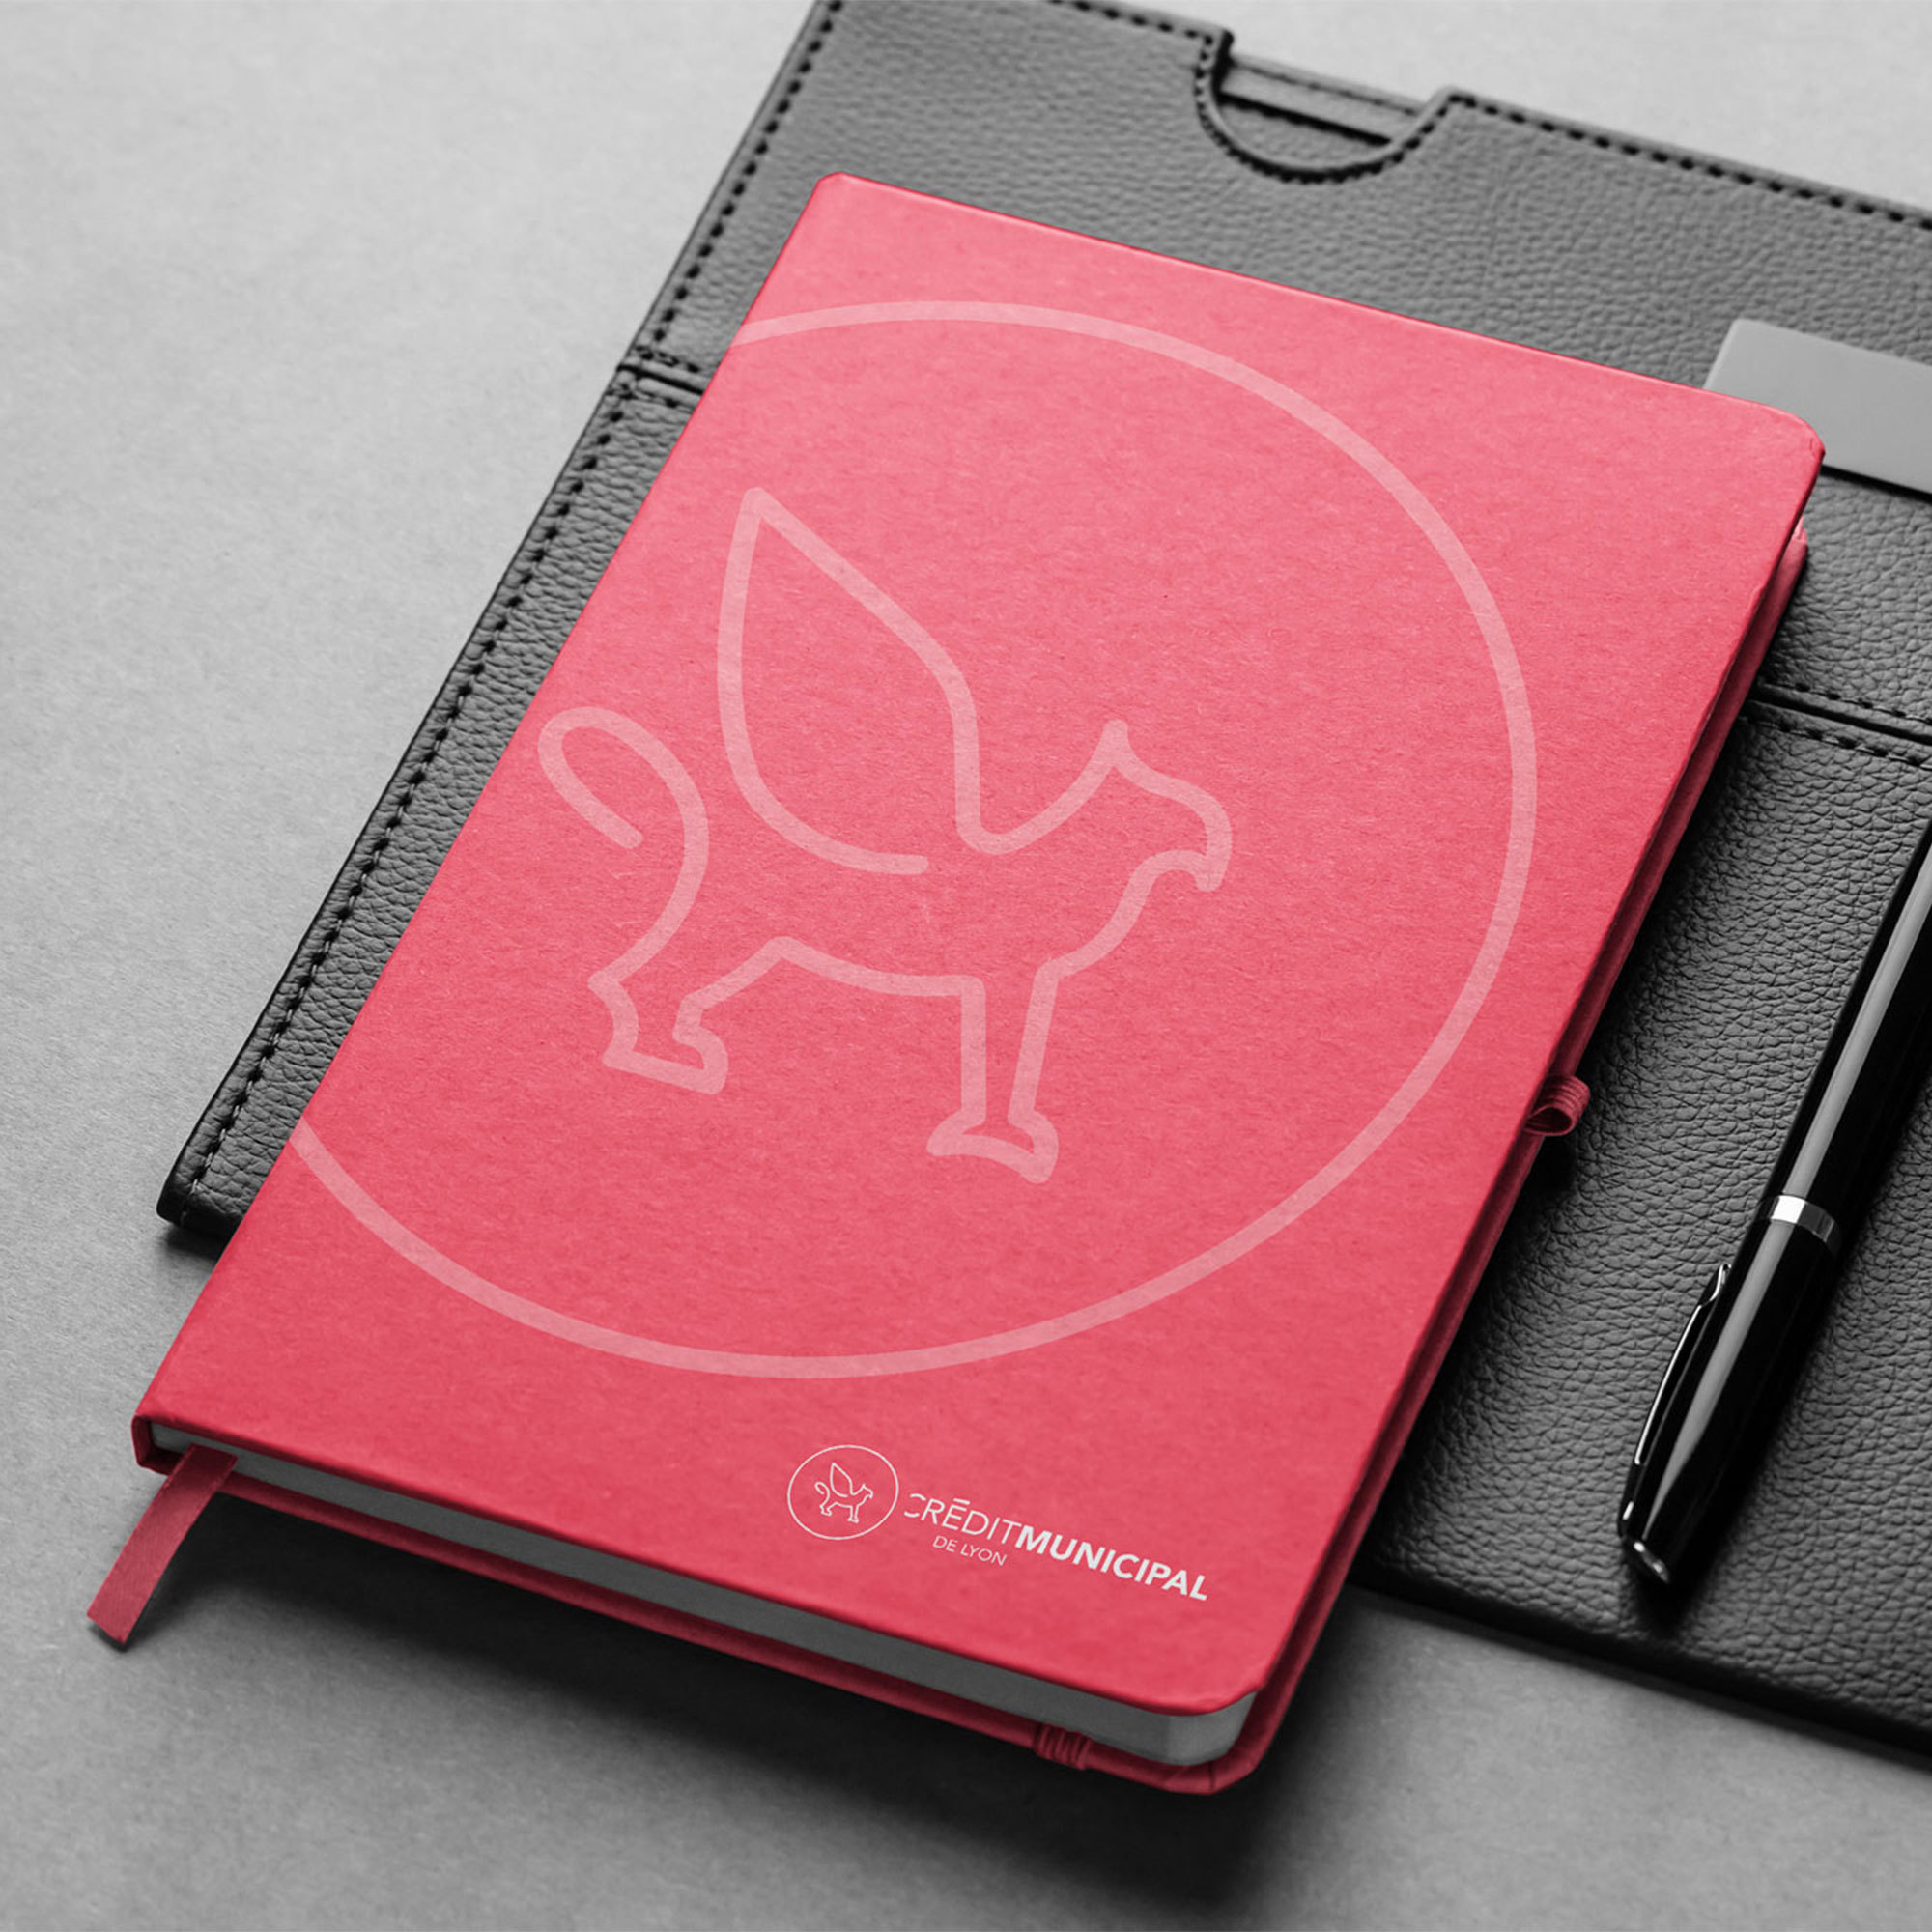 Cml Notebook 2